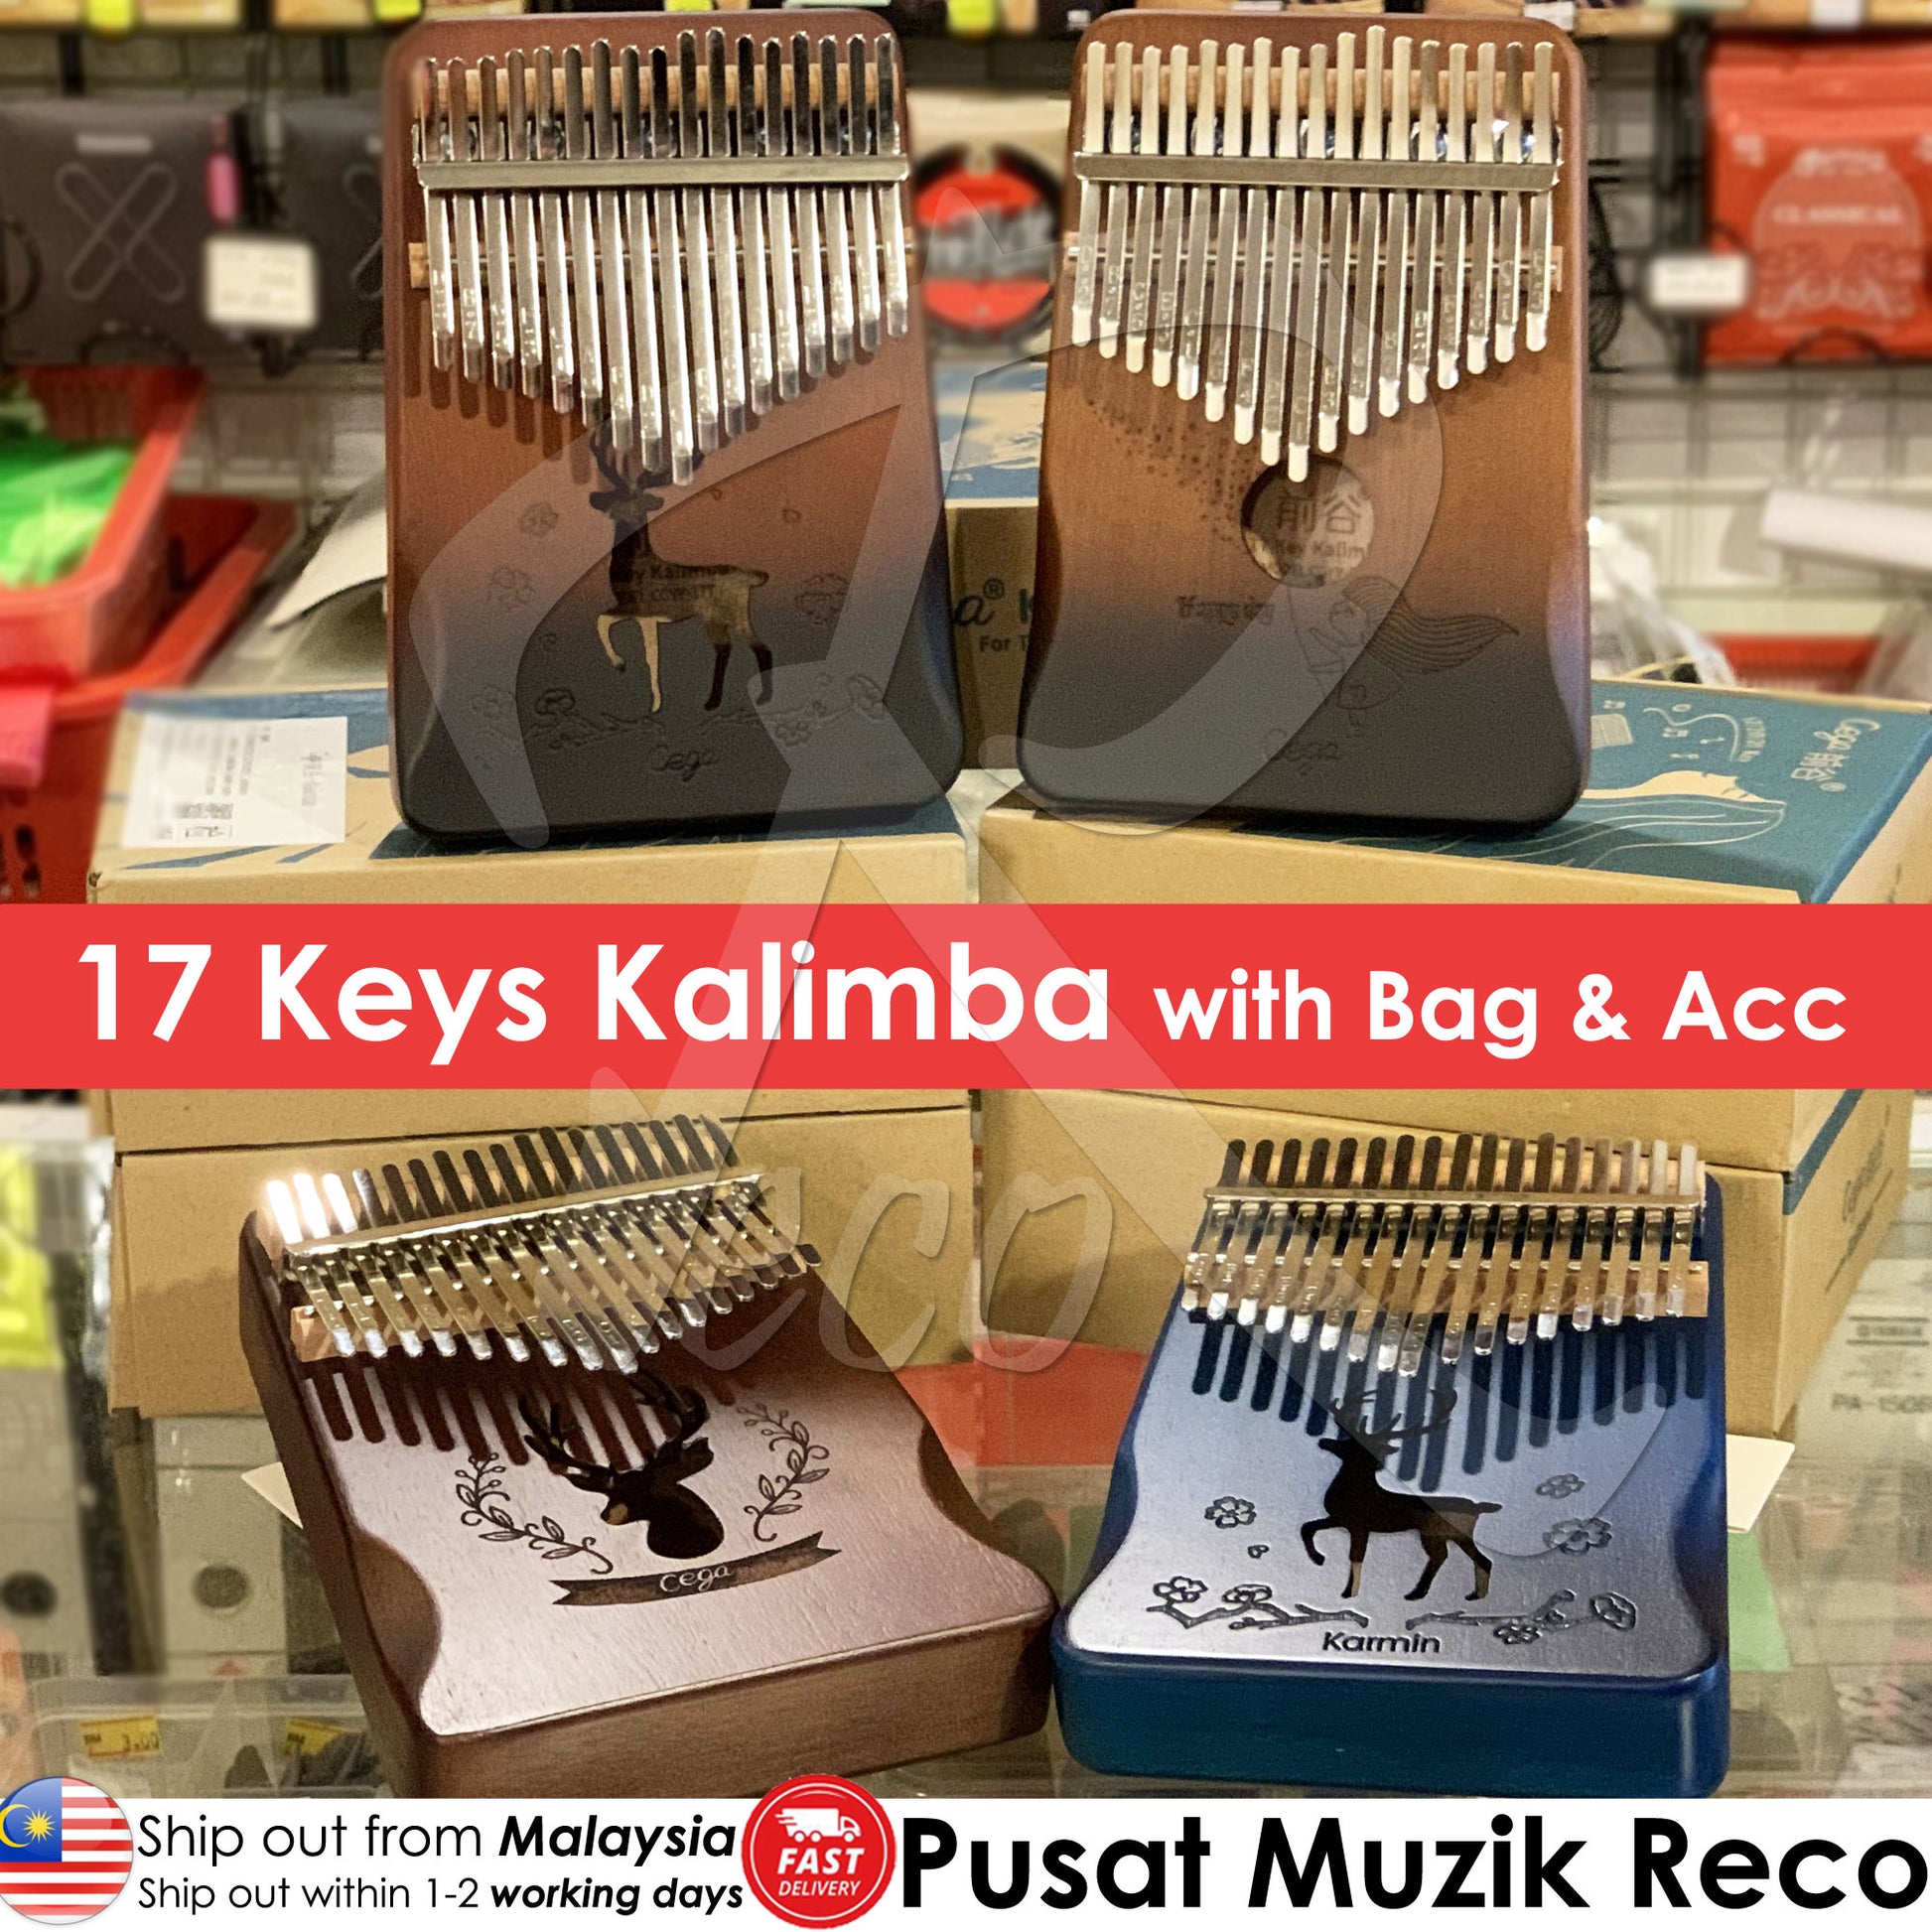 RM 17 keys Pink Kalimba Thumb Piano Finger Piano - Reco Music Malaysia